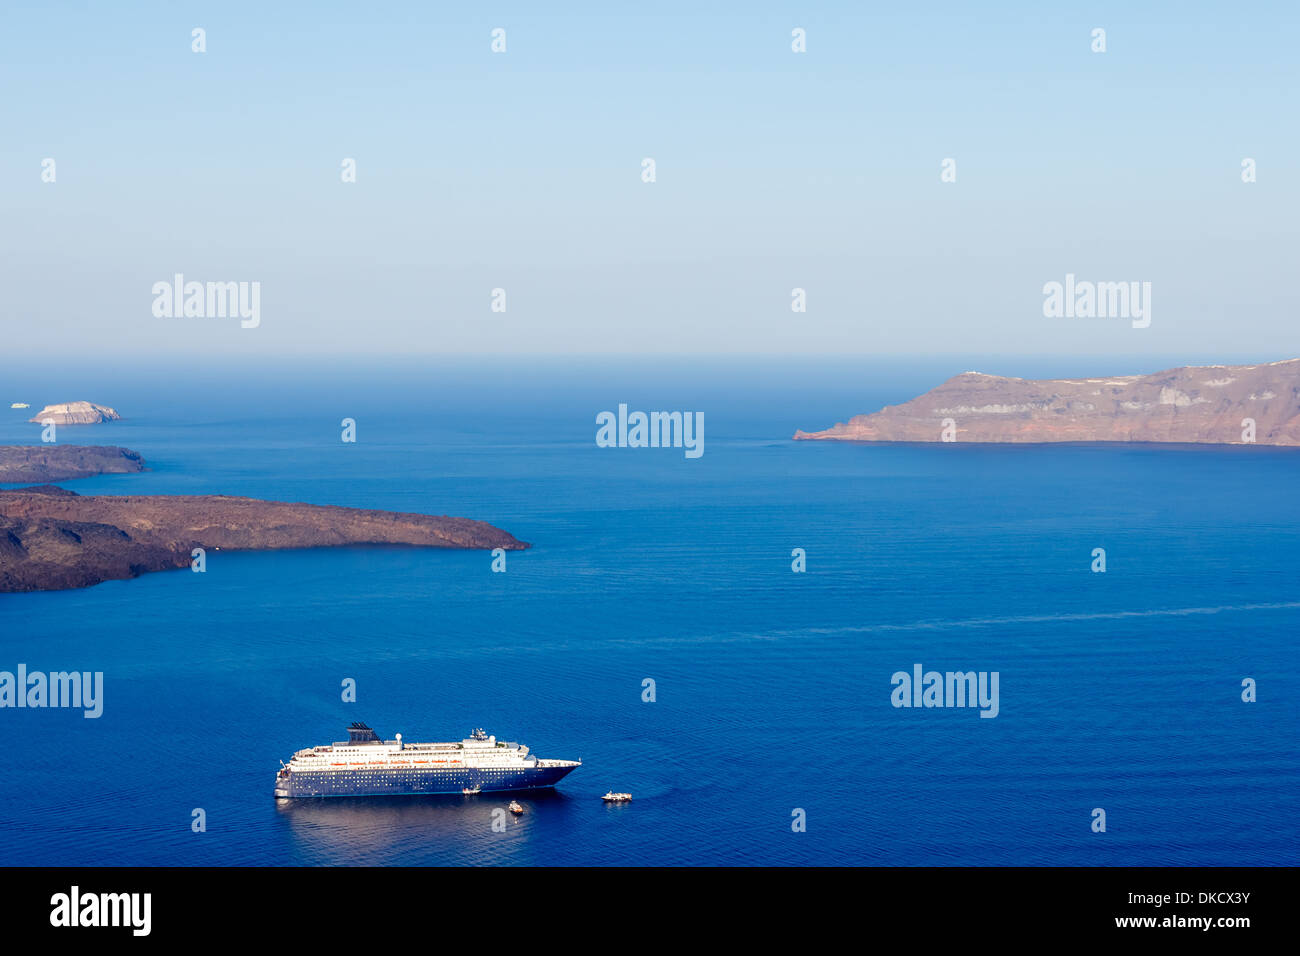 Nea Kameni isola vulcanica di Santorini in Grecia con navi davanti fotografati da un alto punto di vista Foto Stock